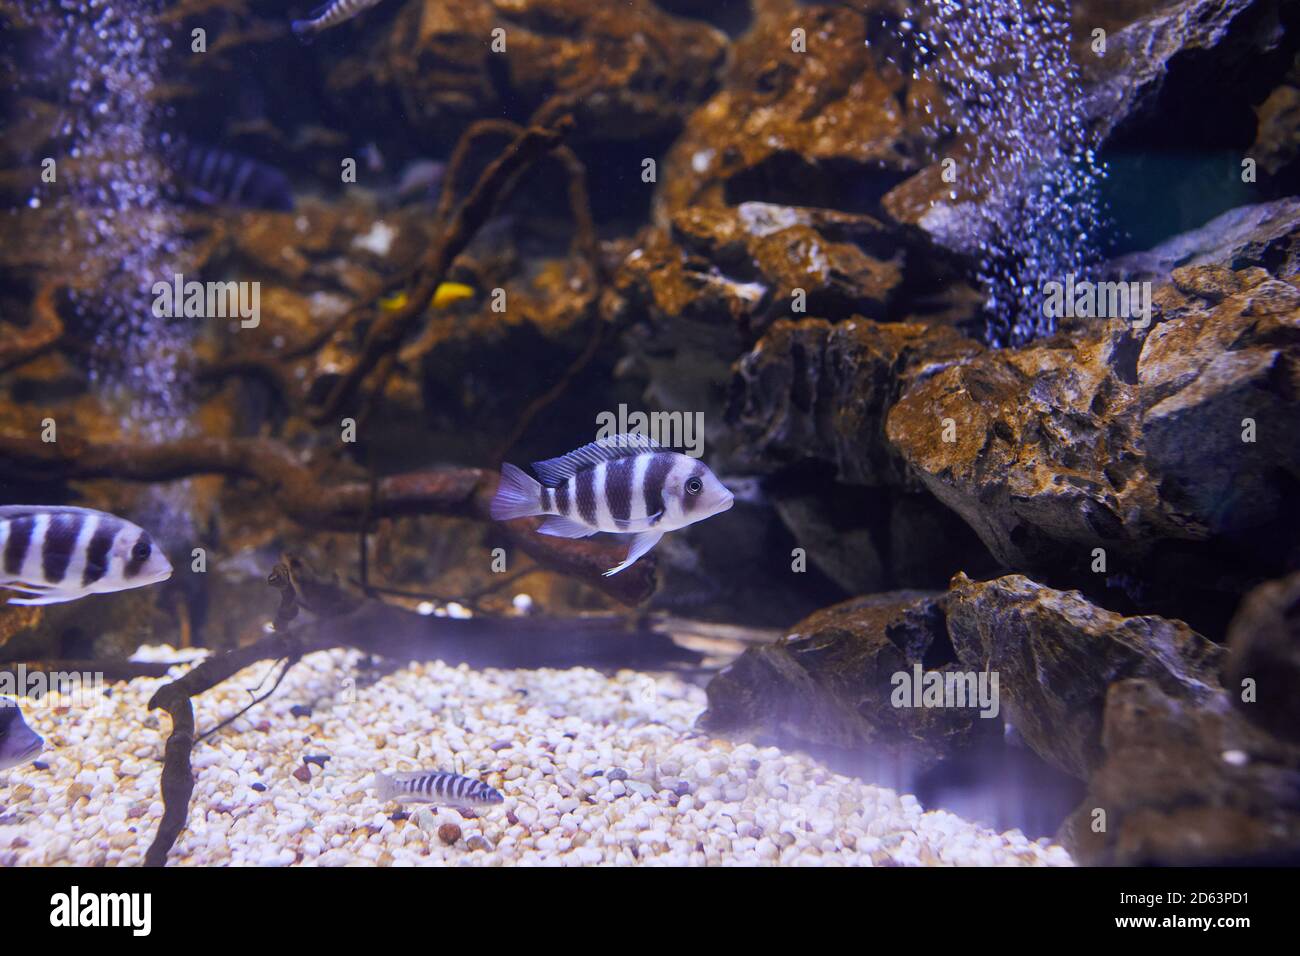 Kenyi cichlid Maylandia lombardoi aquarium fish swimming at aquarium. (Maylandia zebra). Stock Photo